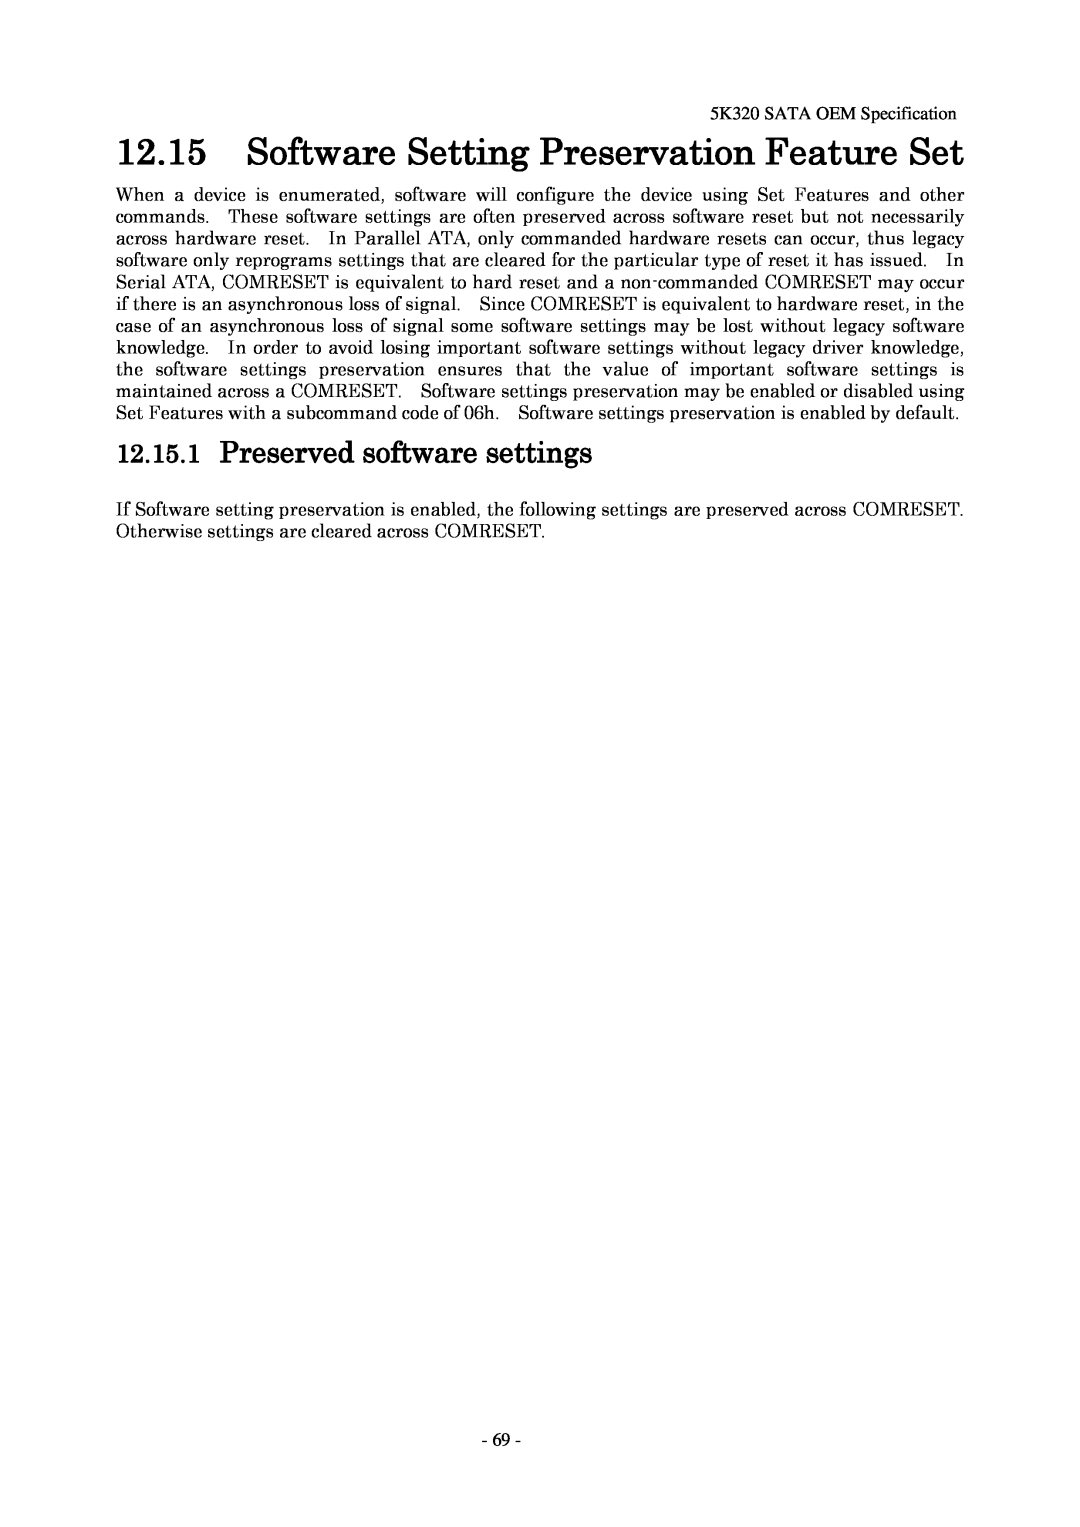 Hitachi HTS543216L9SA00 manual 12.15Software Setting Preservation Feature Set, 12.15.1Preserved software settings 